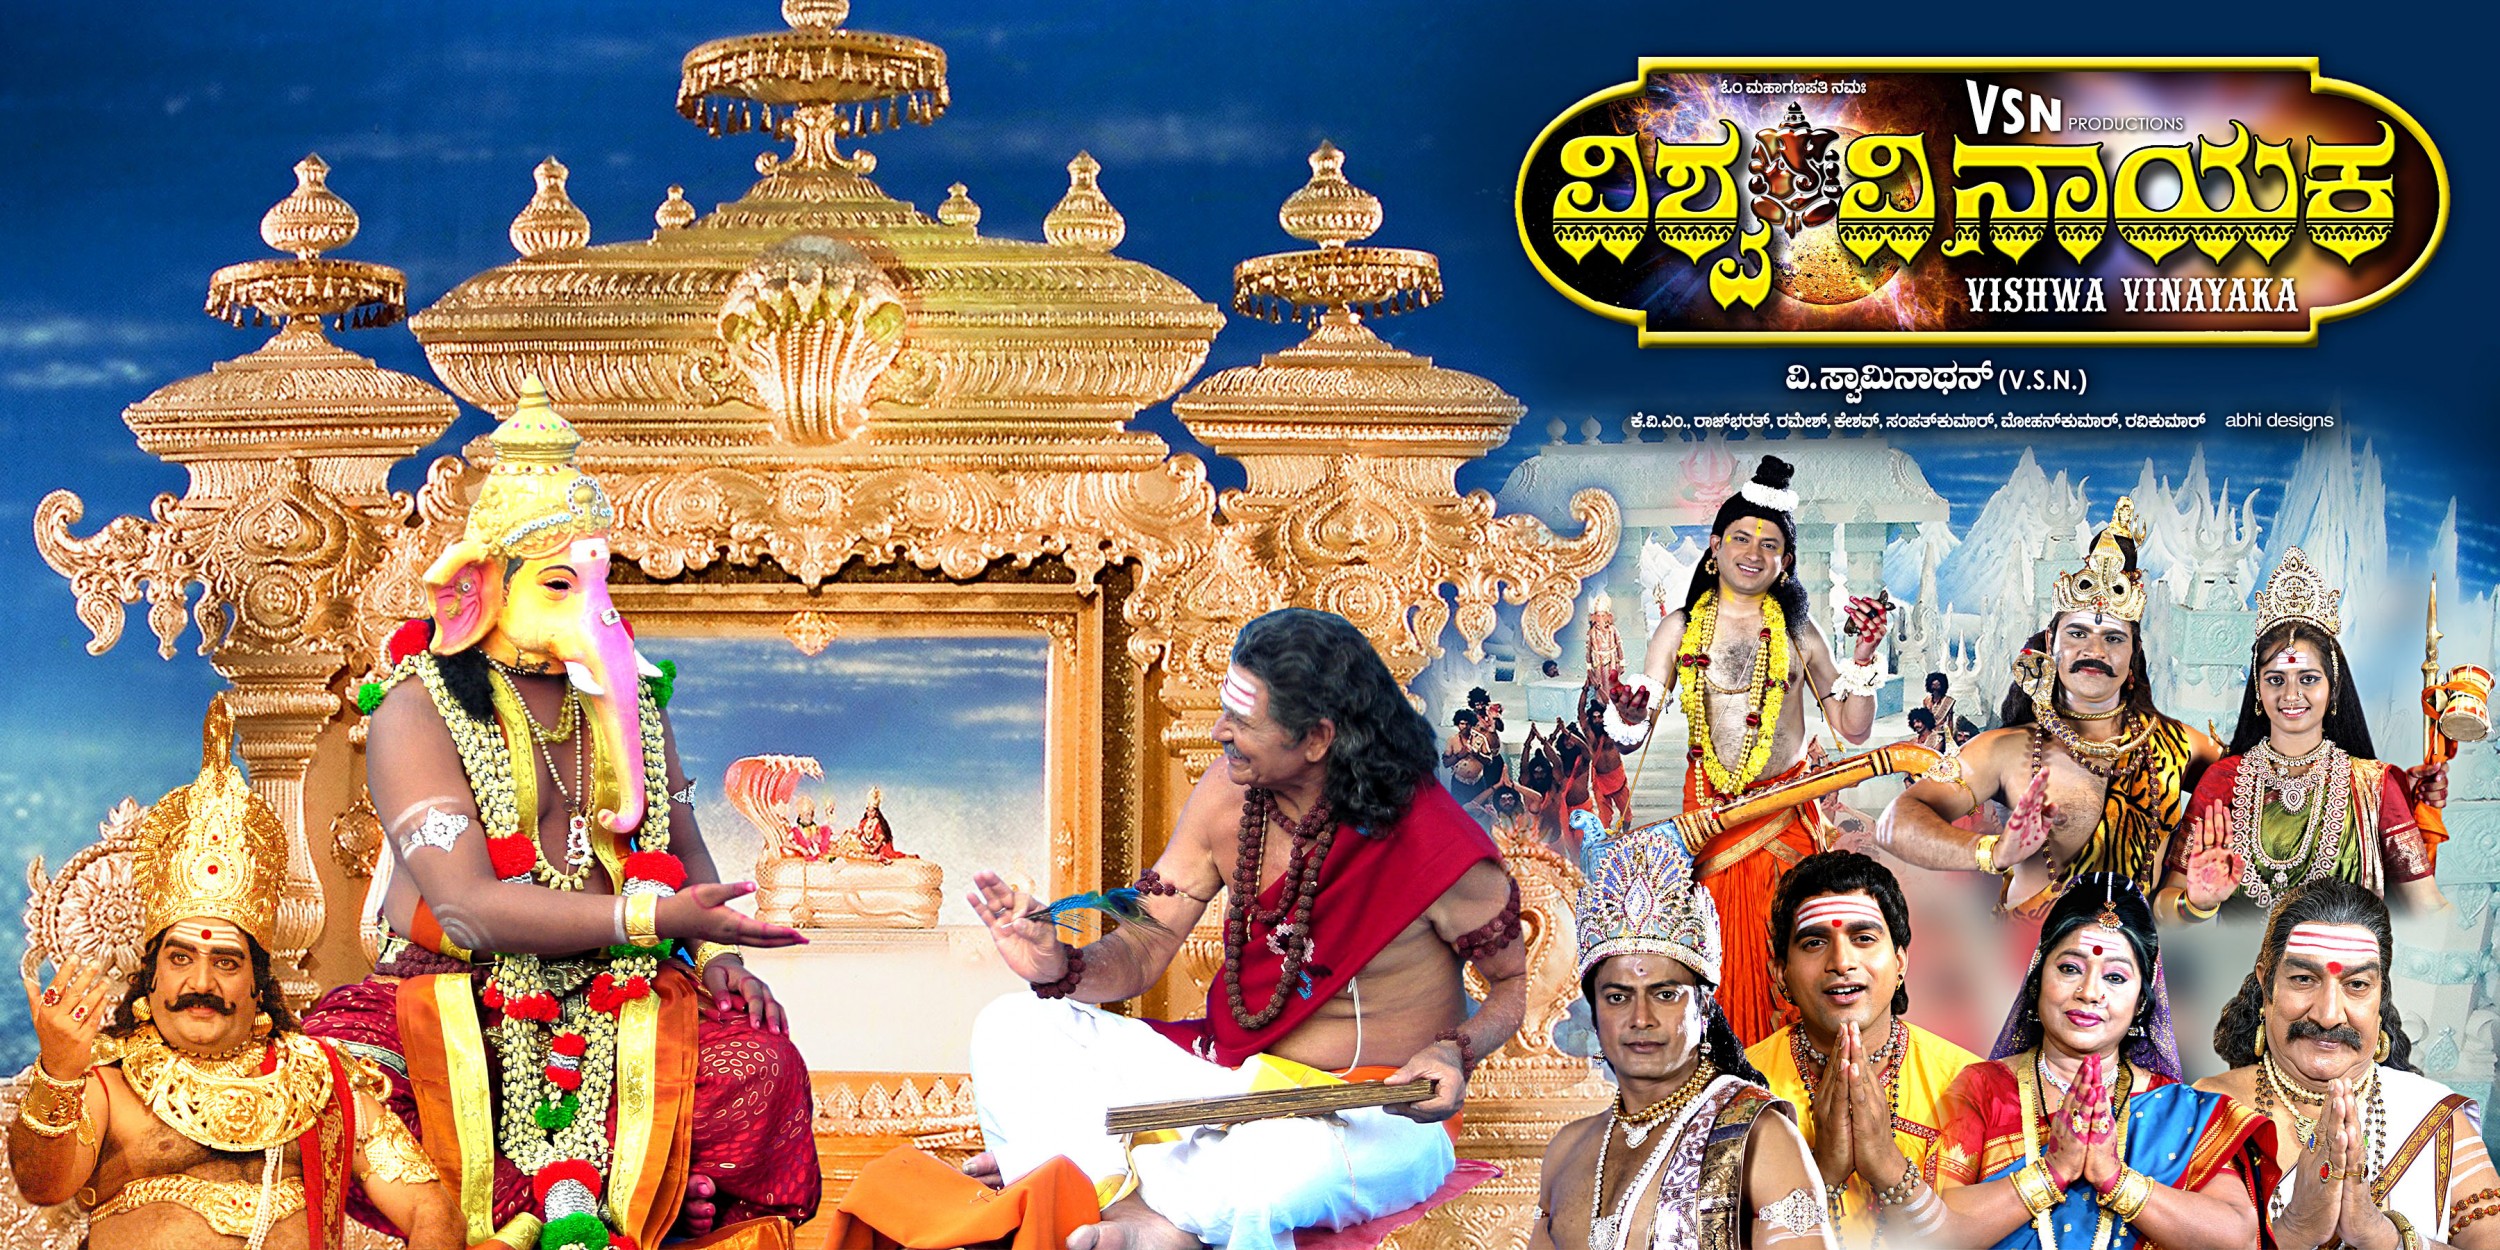 Mega Sized Movie Poster Image for Vishwa Vinayaka (#4 of 7)